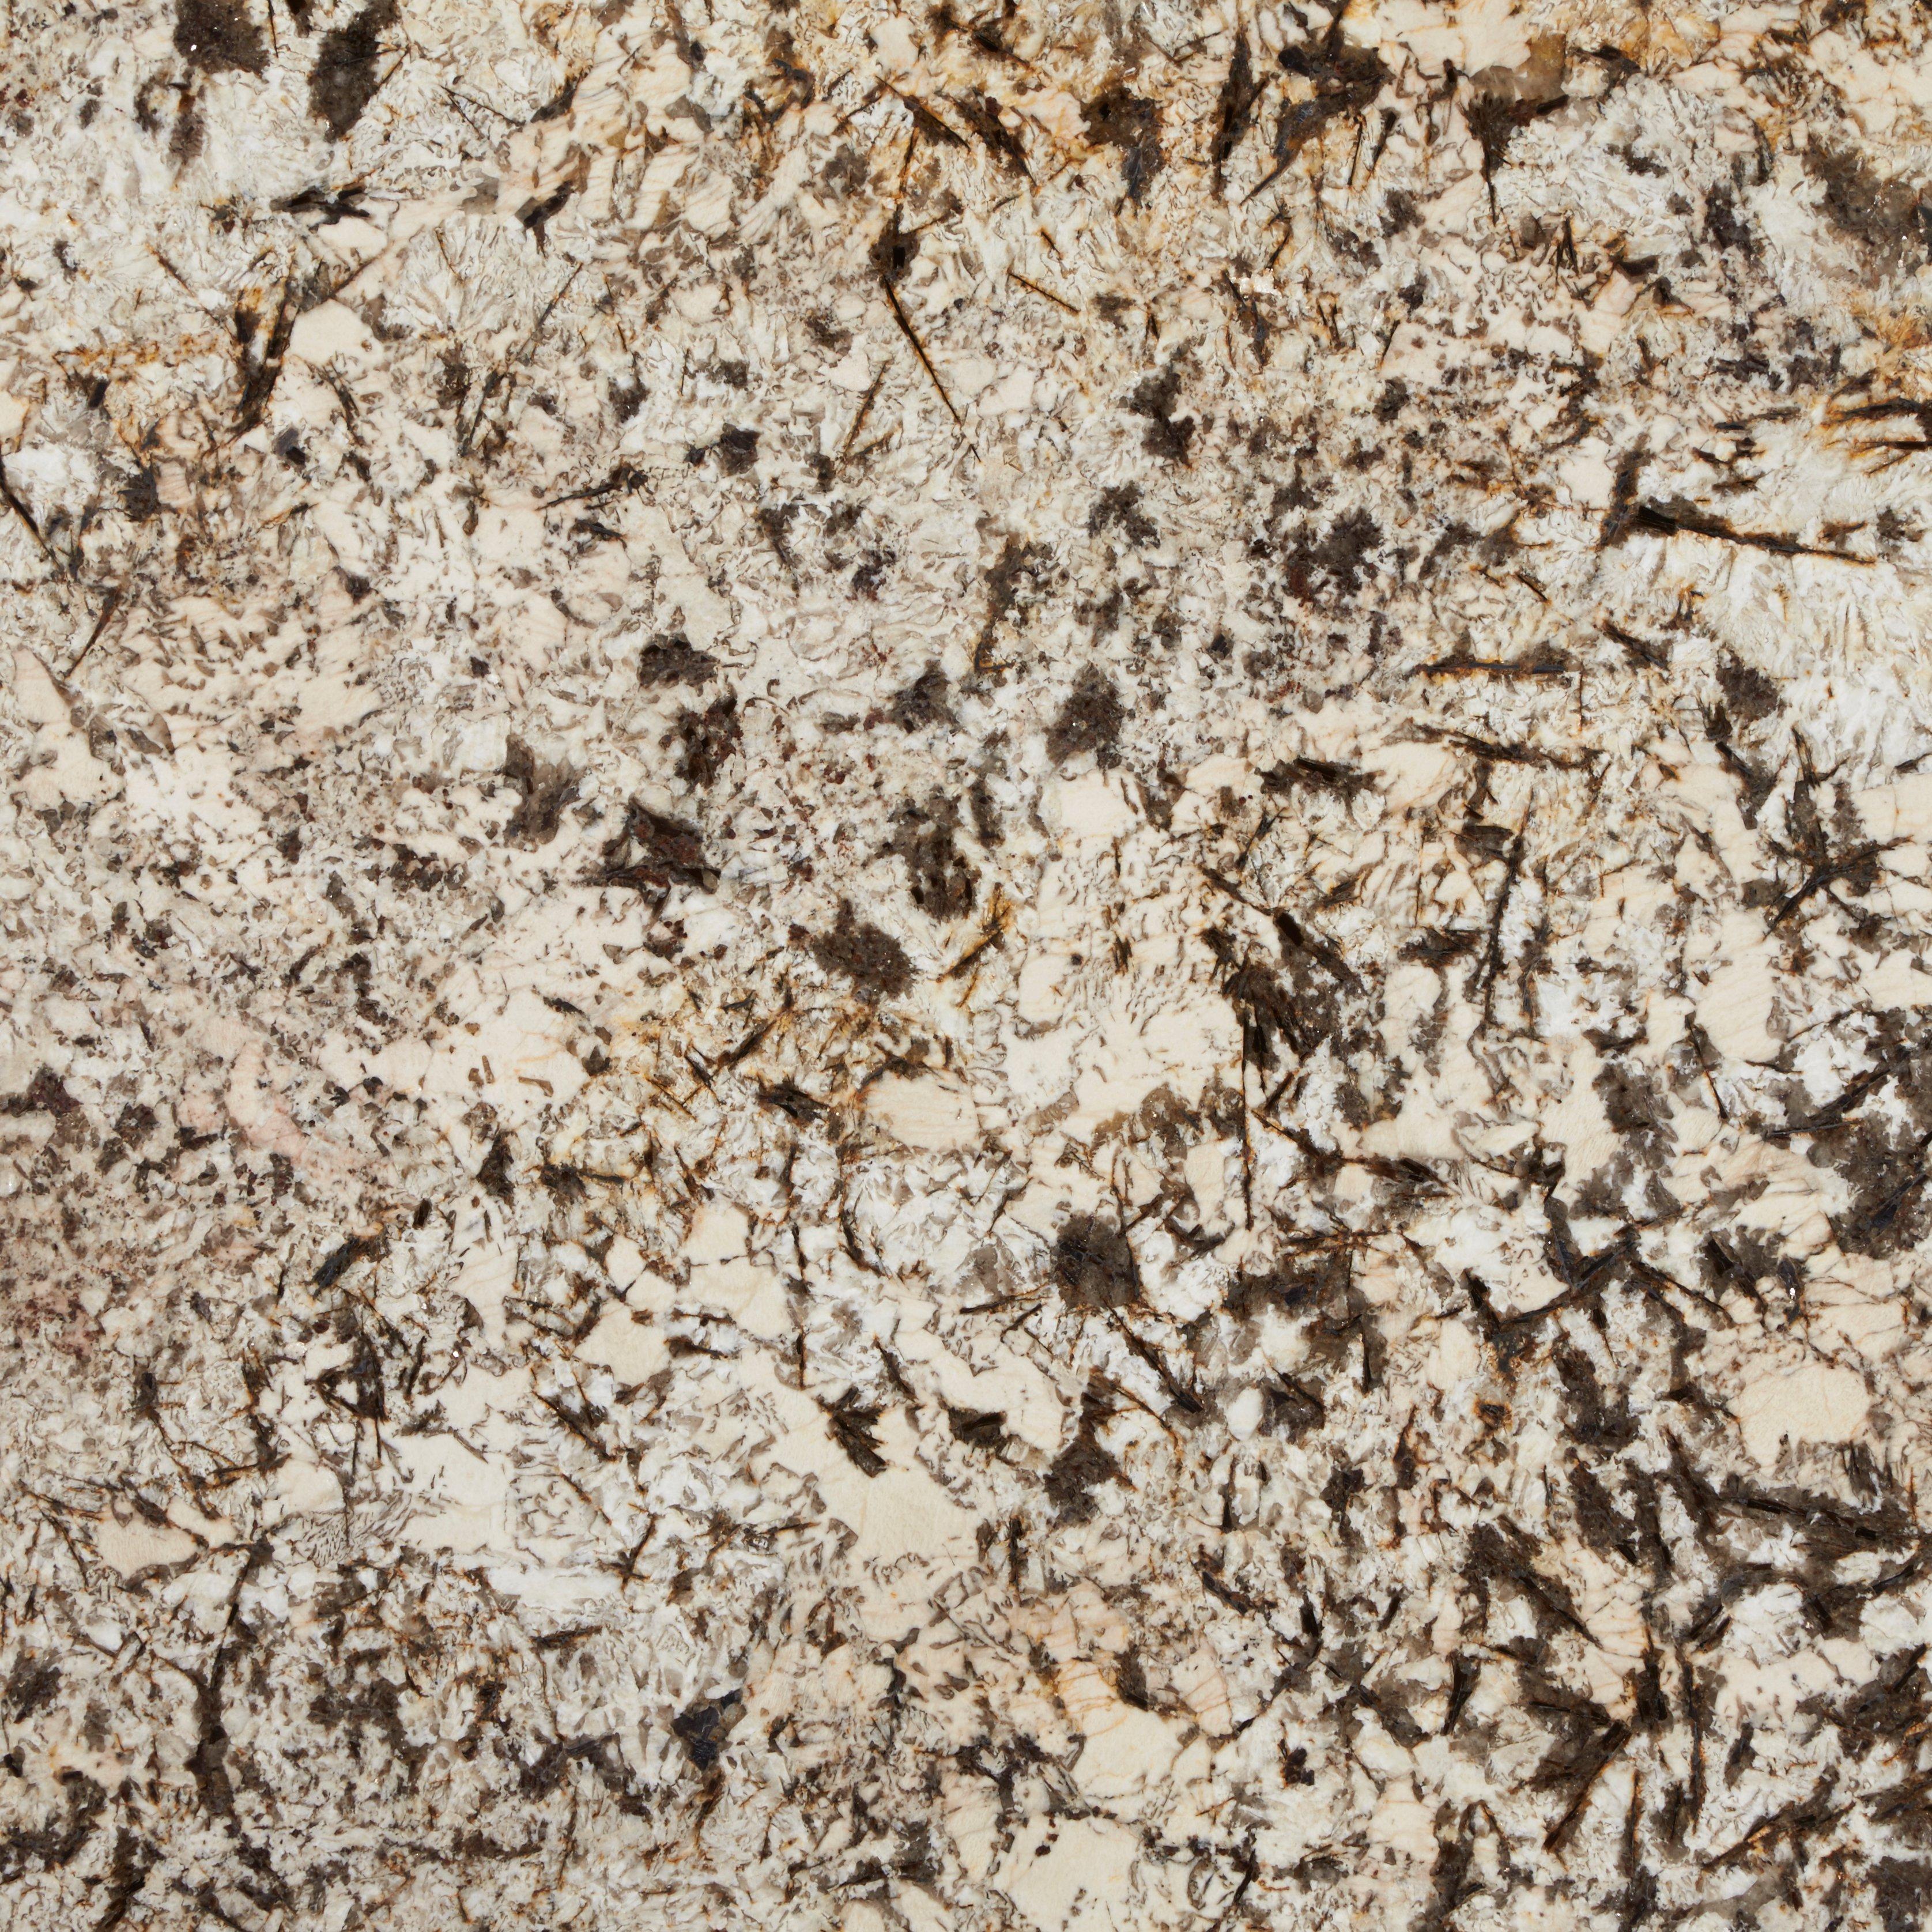 Sample Custom Countertop Cyprus Granite 4 X 4 100200021